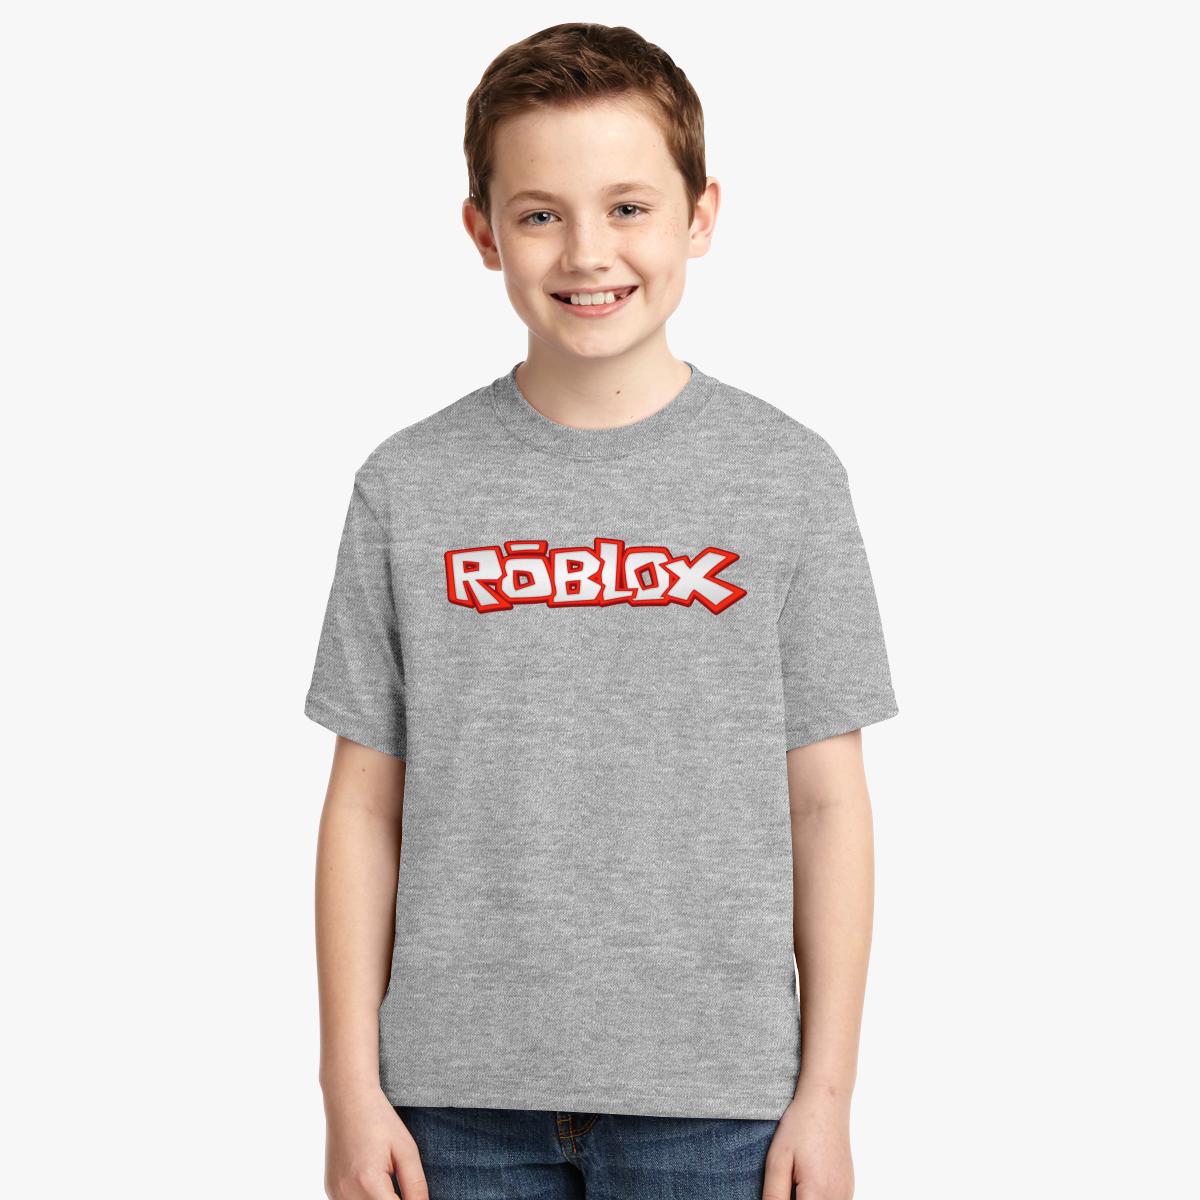 Roblox Shirt Ids 2018 Agbu Hye Geen